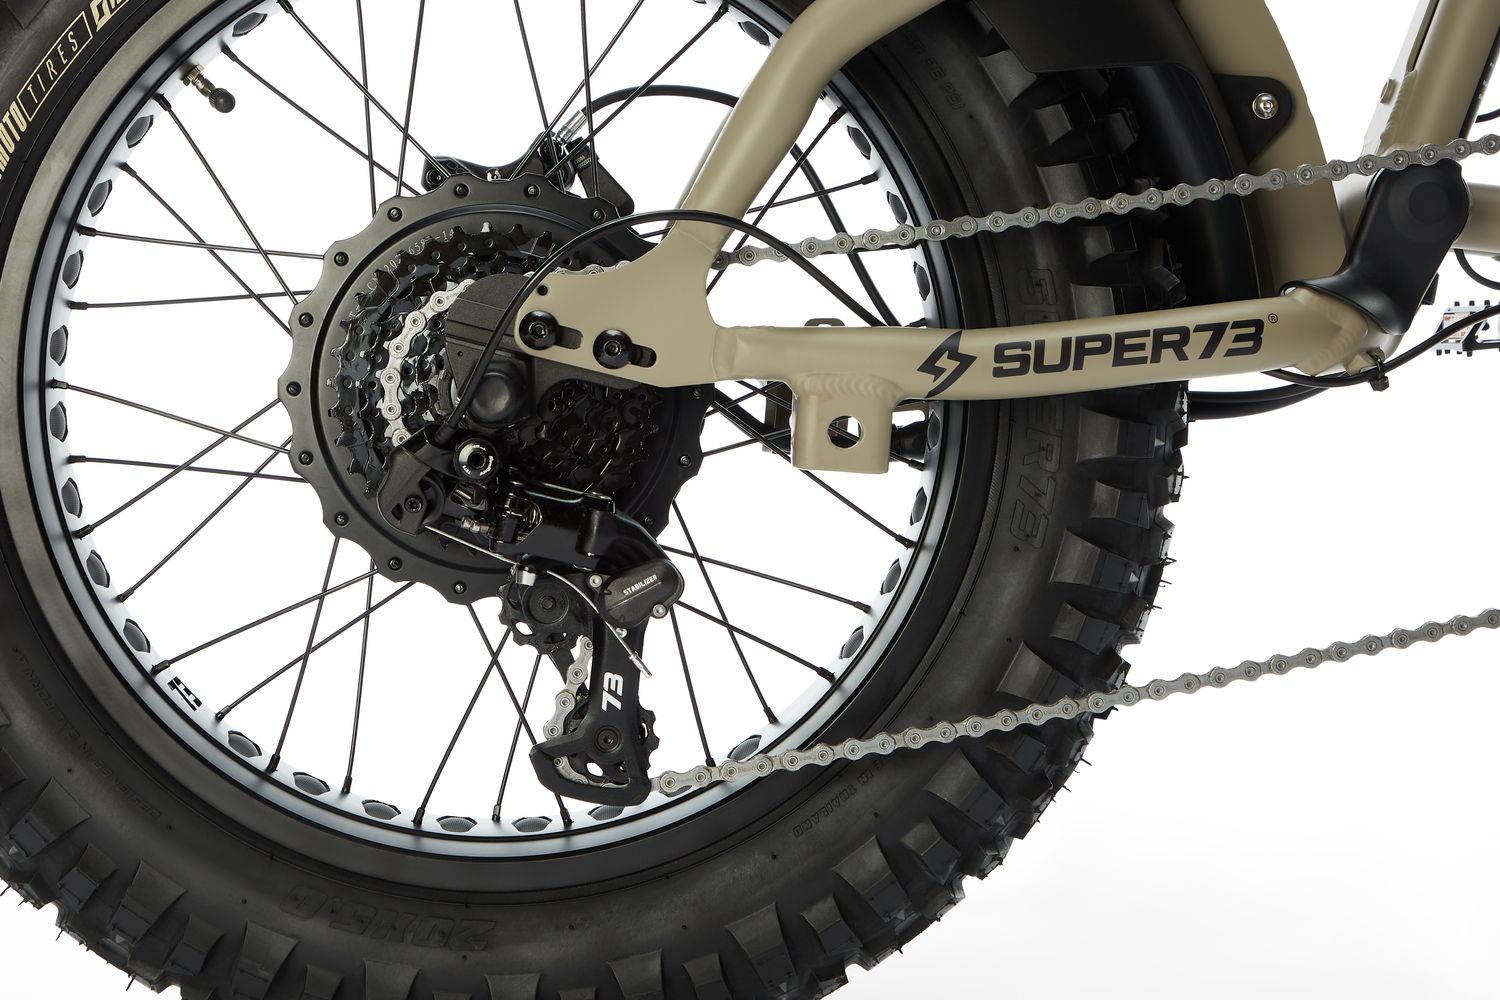 Super73-RX Mojave Dark Earth back tire